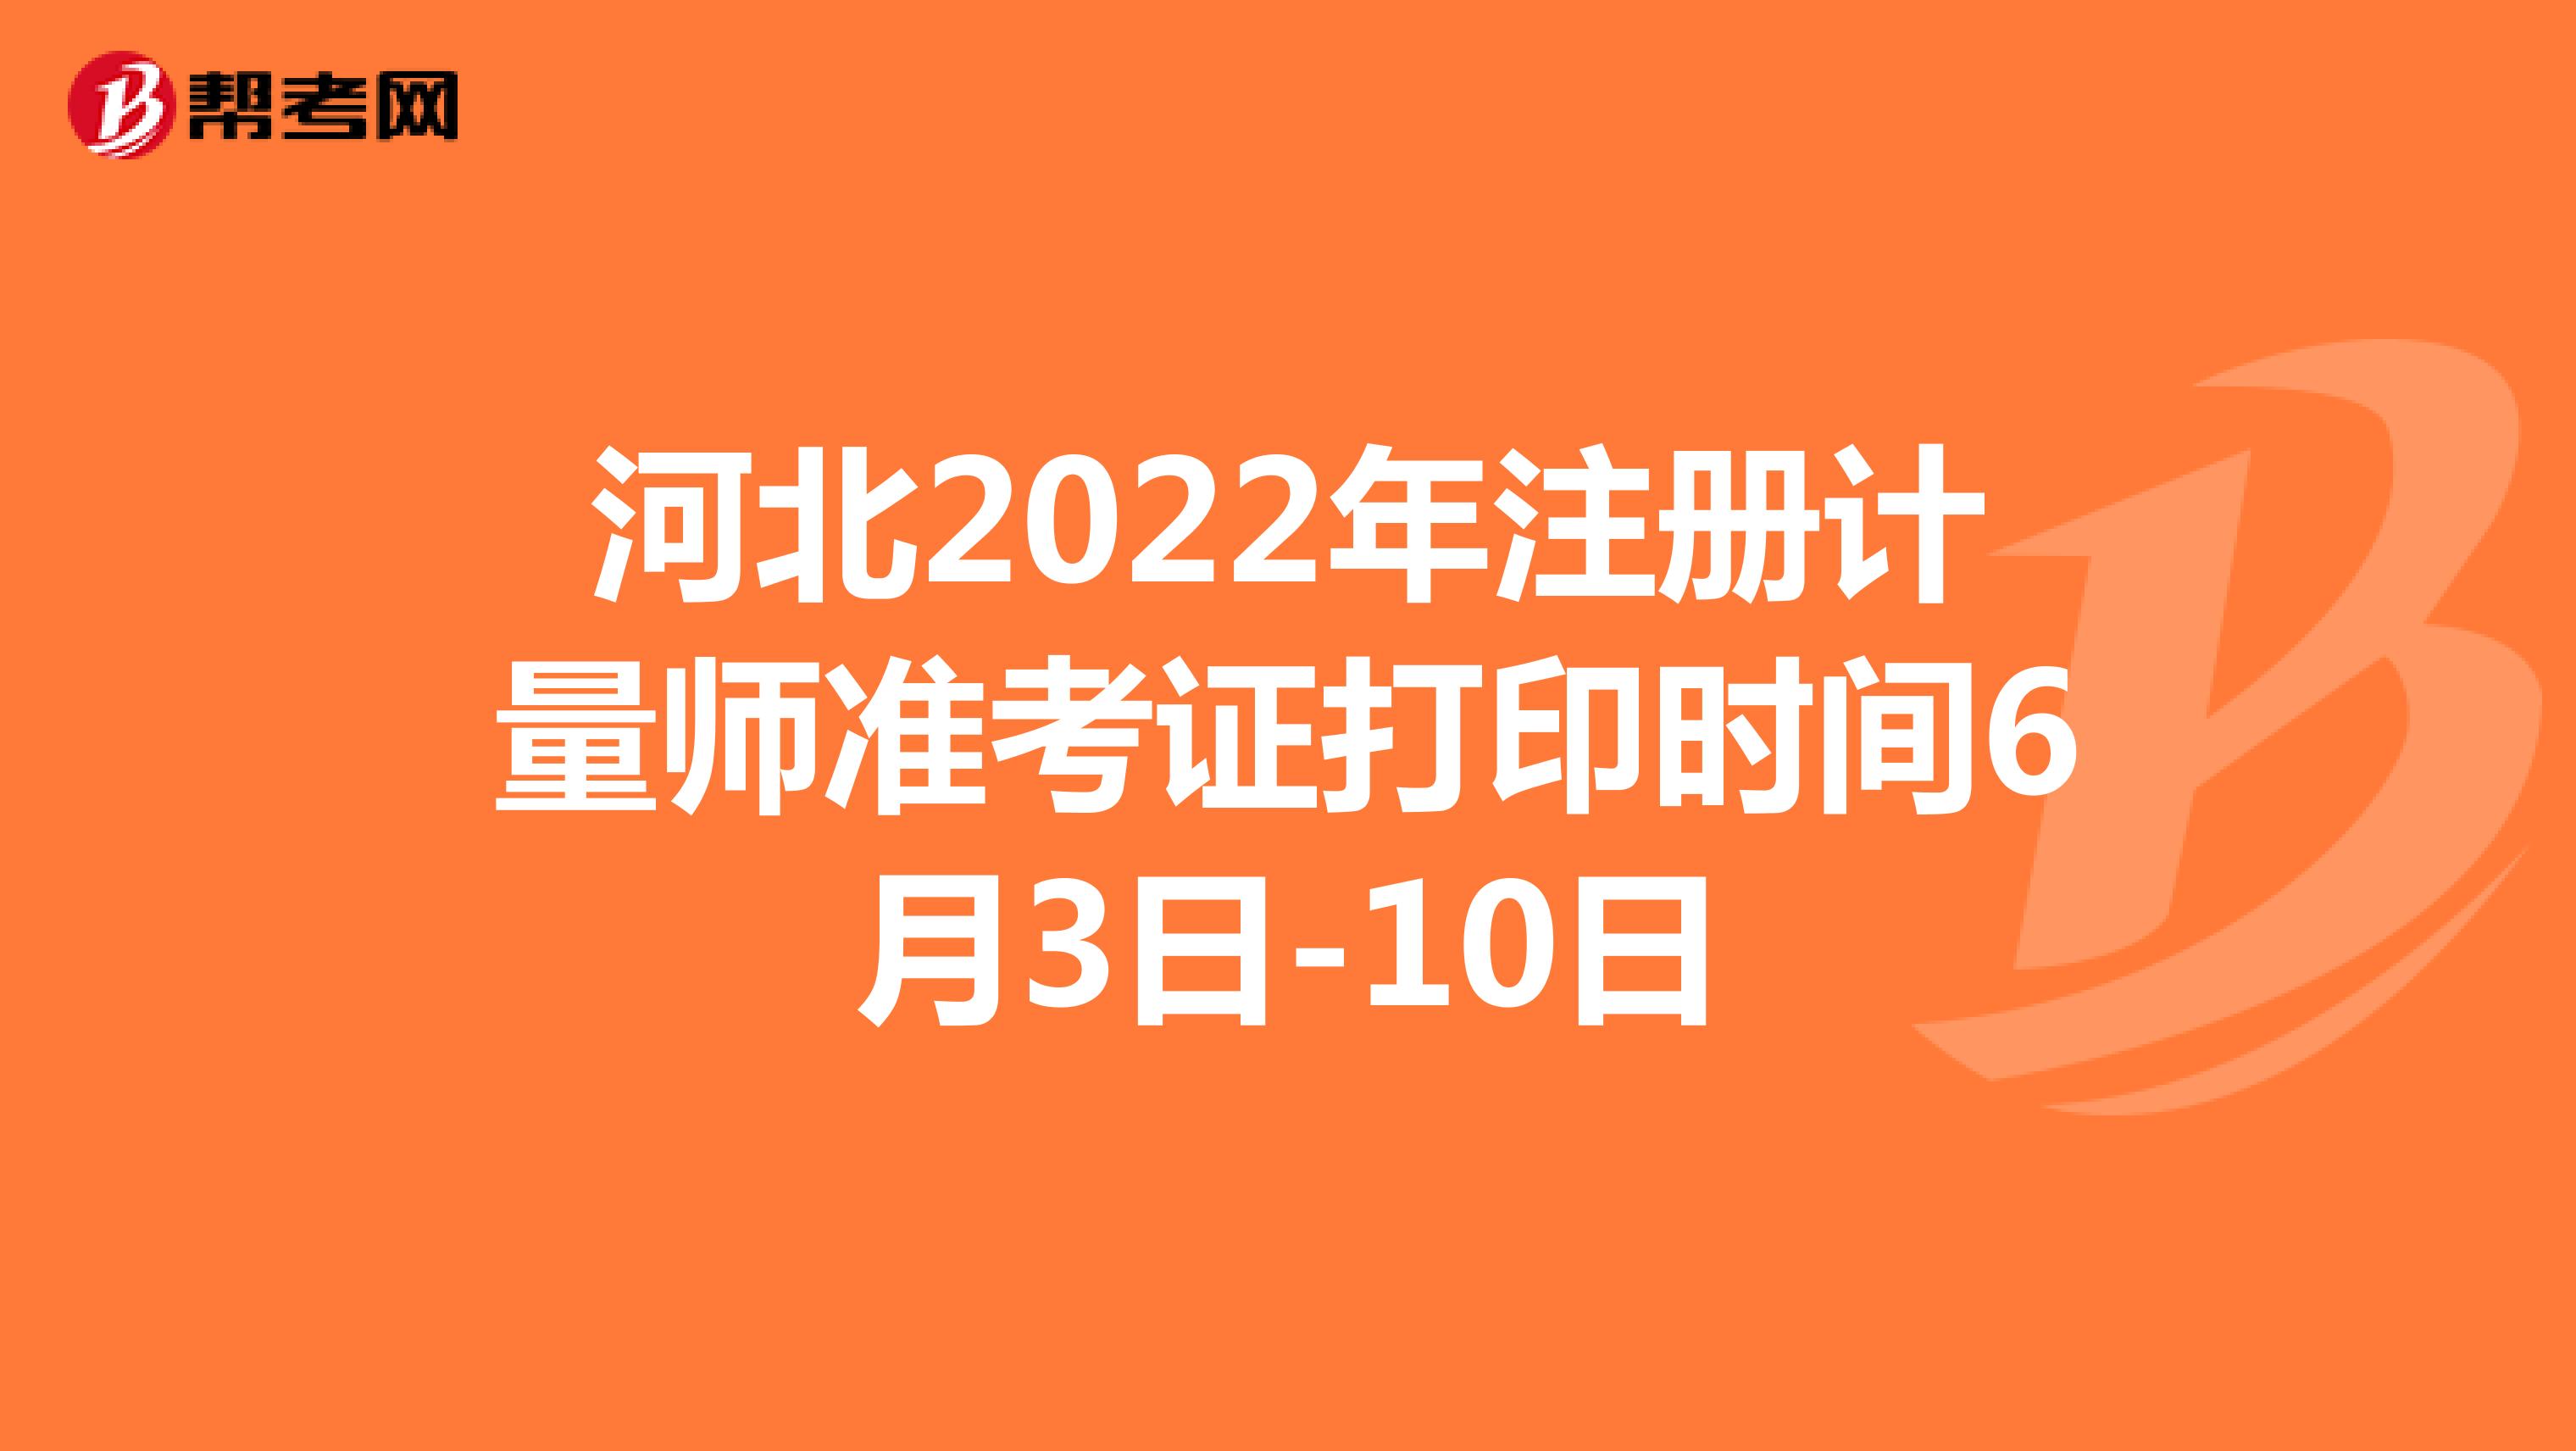 河北2022年注册计量师准考证打印时间6月3日-10日